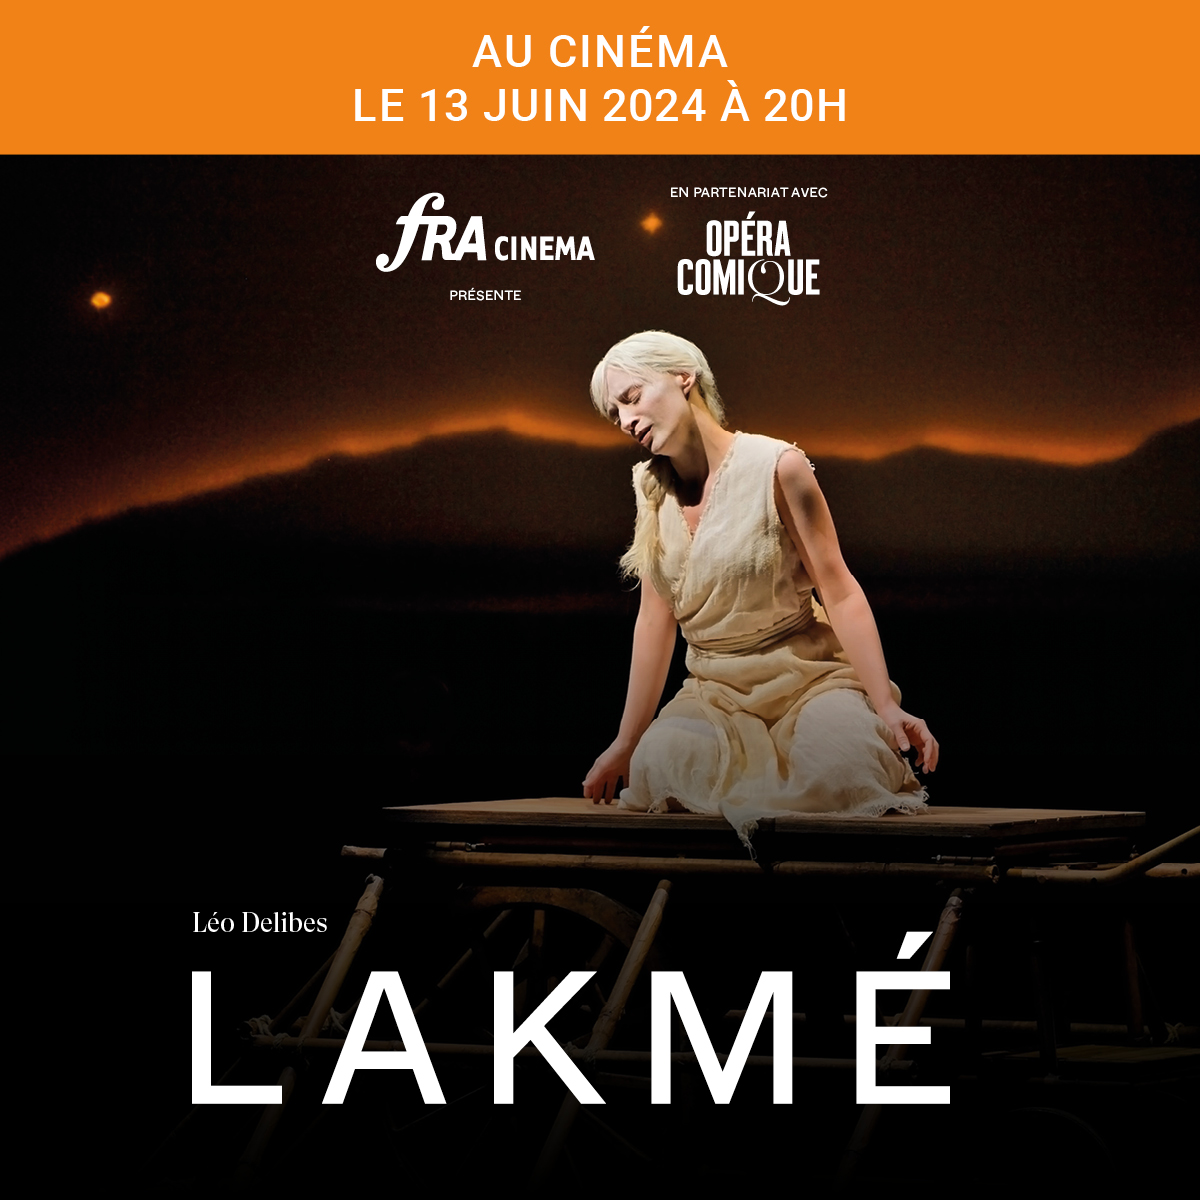 Lakmé : un chef-d'œuvre de Léo Delibes à découvrir sur grand écran le 13 juin dans votre cinéma. Laissez-vous transporter par la beauté de la musique et la mise en scène de Laurent Pelly. En partenariat avec @fracinema